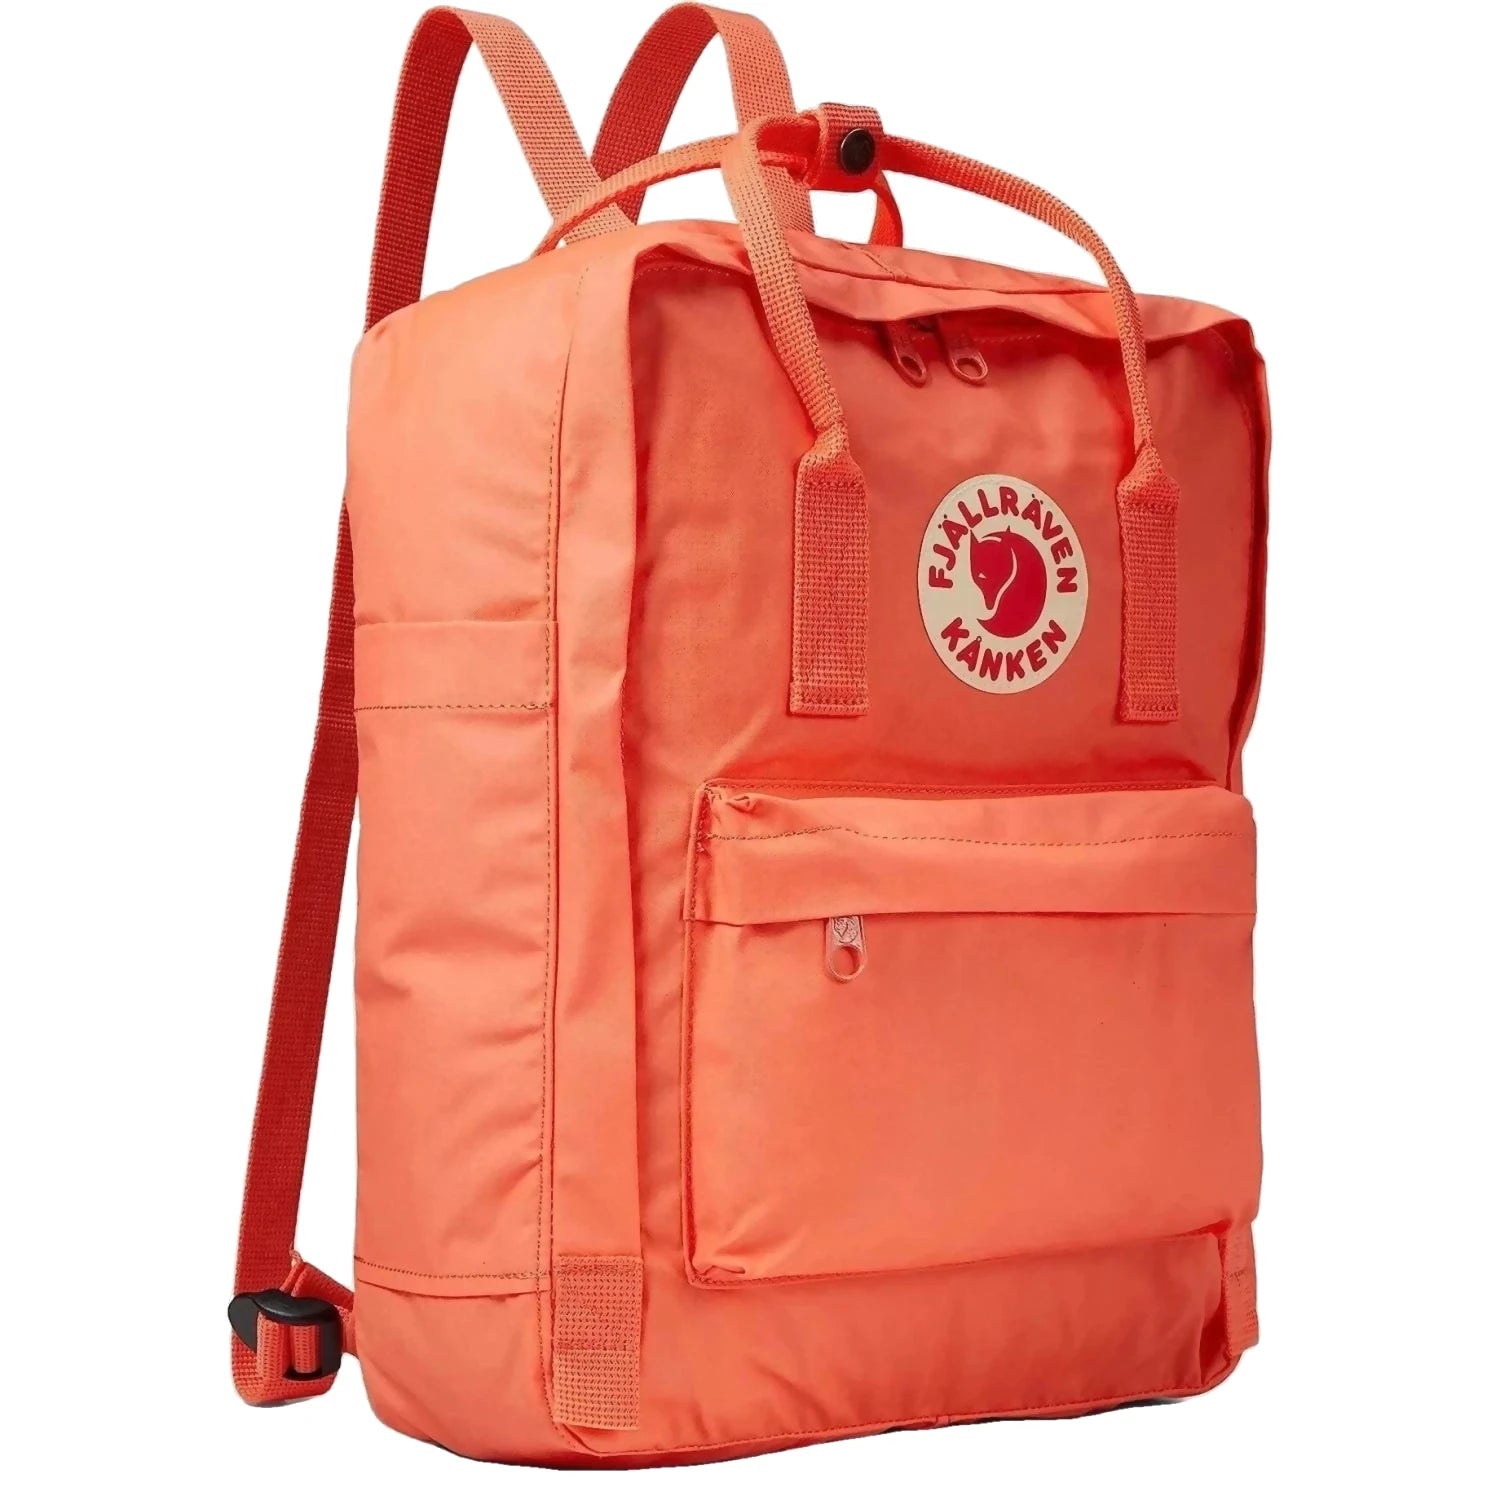 Fjallraven Kanken Backpack, korall  color, front view.